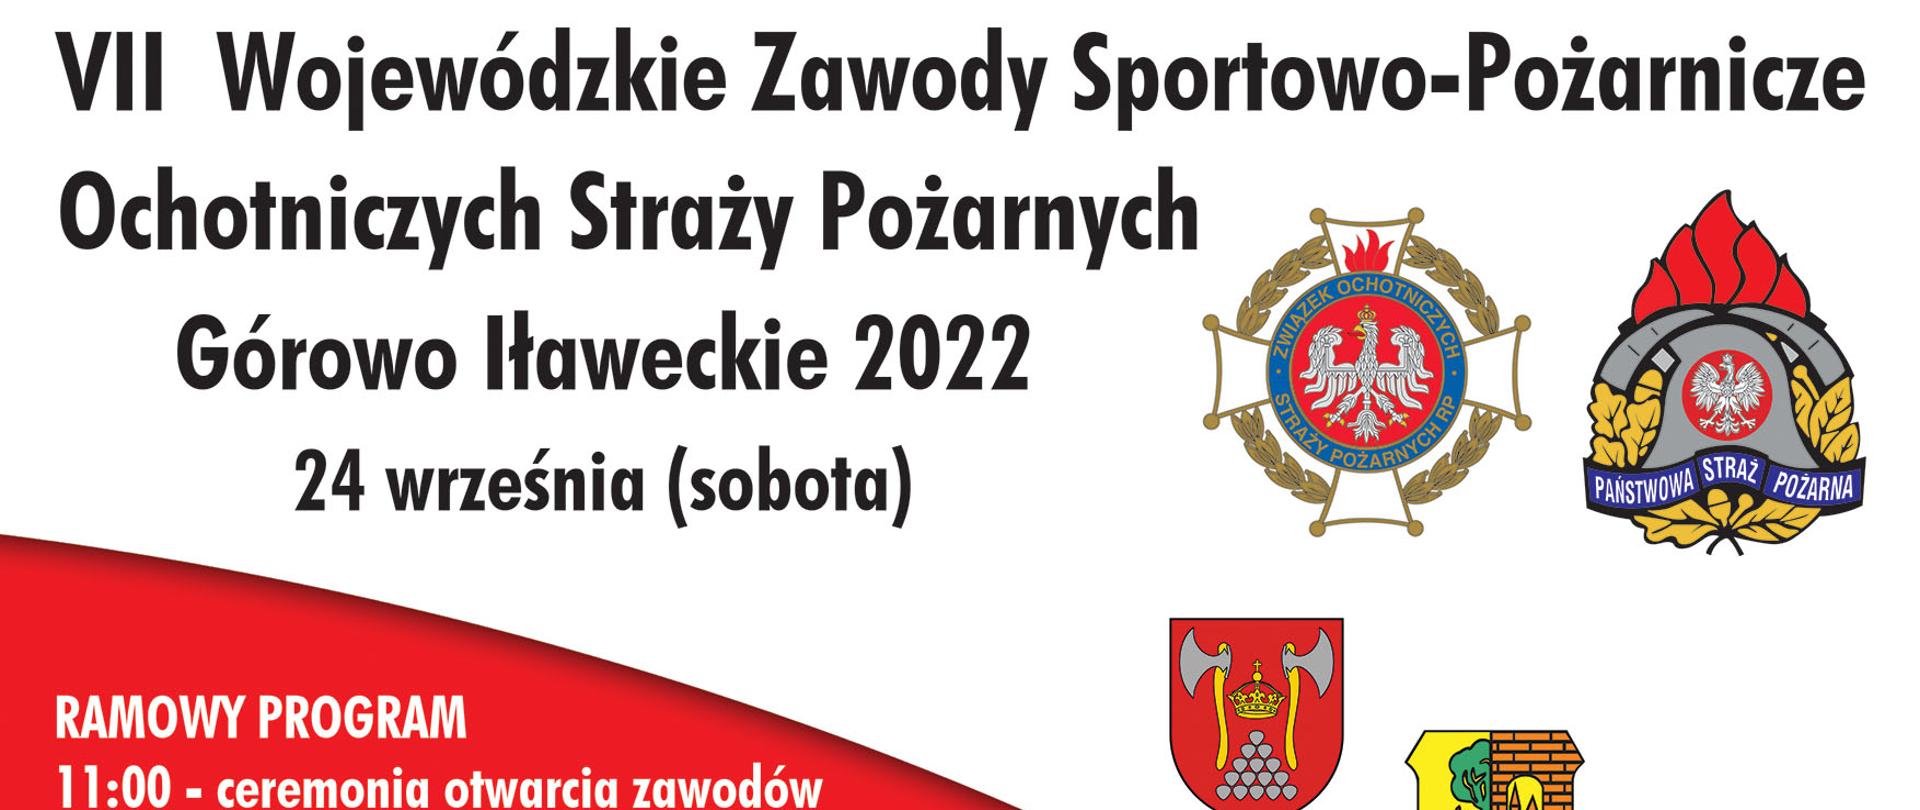 VII Wojewódzkie Zawody Sportowo-Pożarnicze OSP w Górowie Iławeckim 24 września 2022 roku - plakat informujący